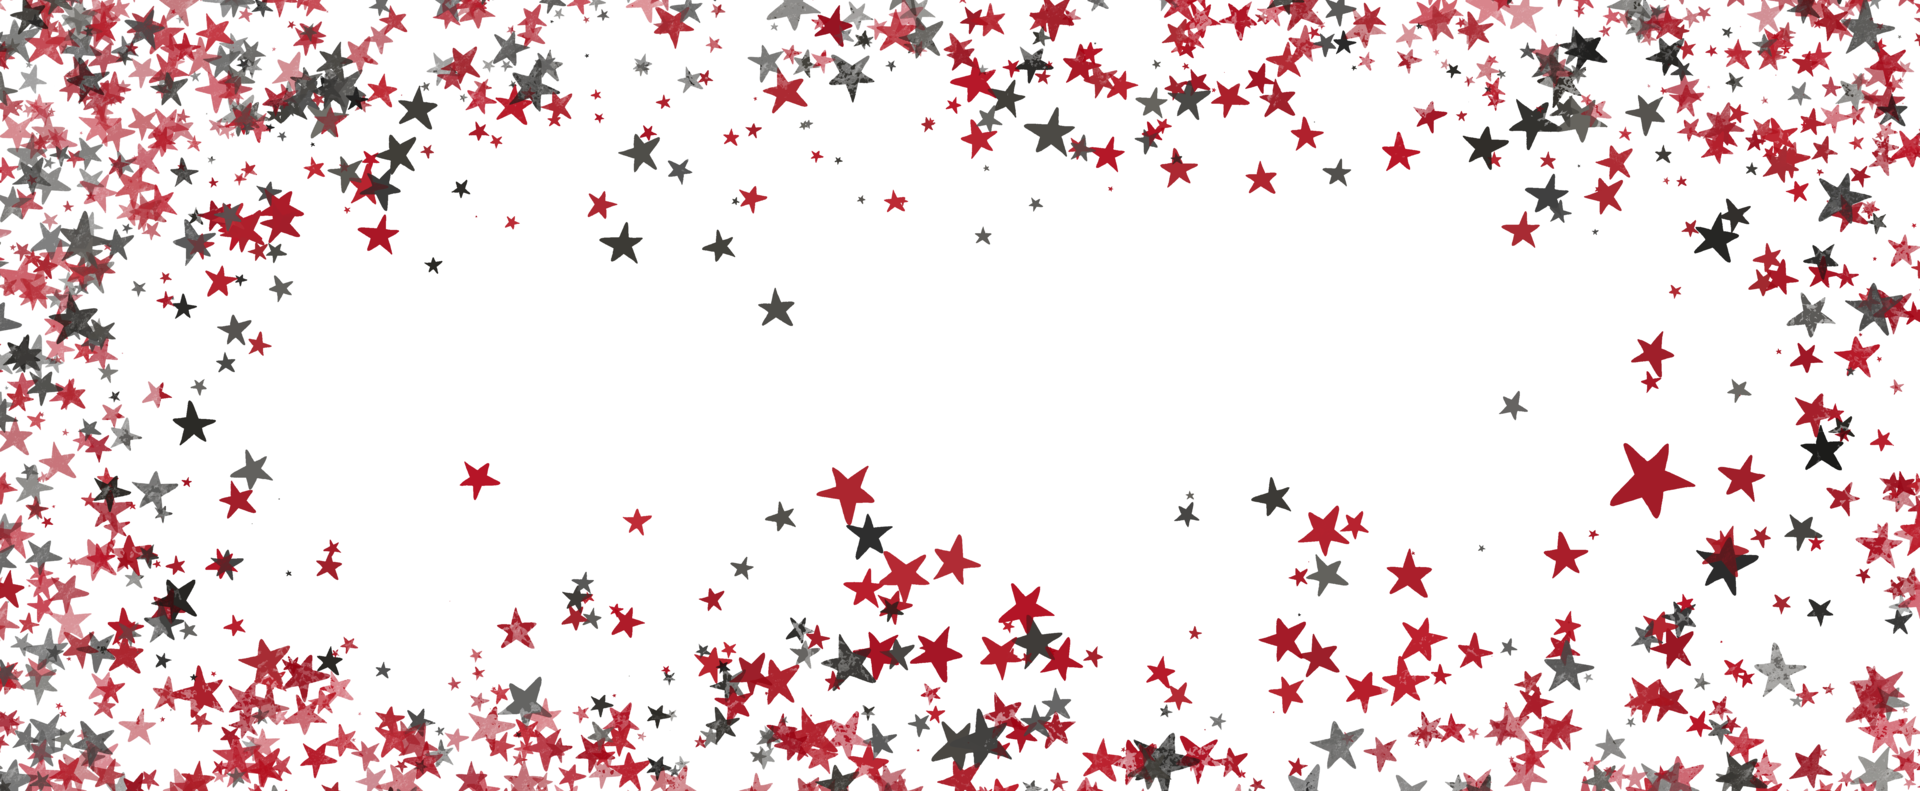 fundo de glitter vermelho de natal com estrelas. , feriado festivo feliz ano novo, textura turva brilhante festiva. png